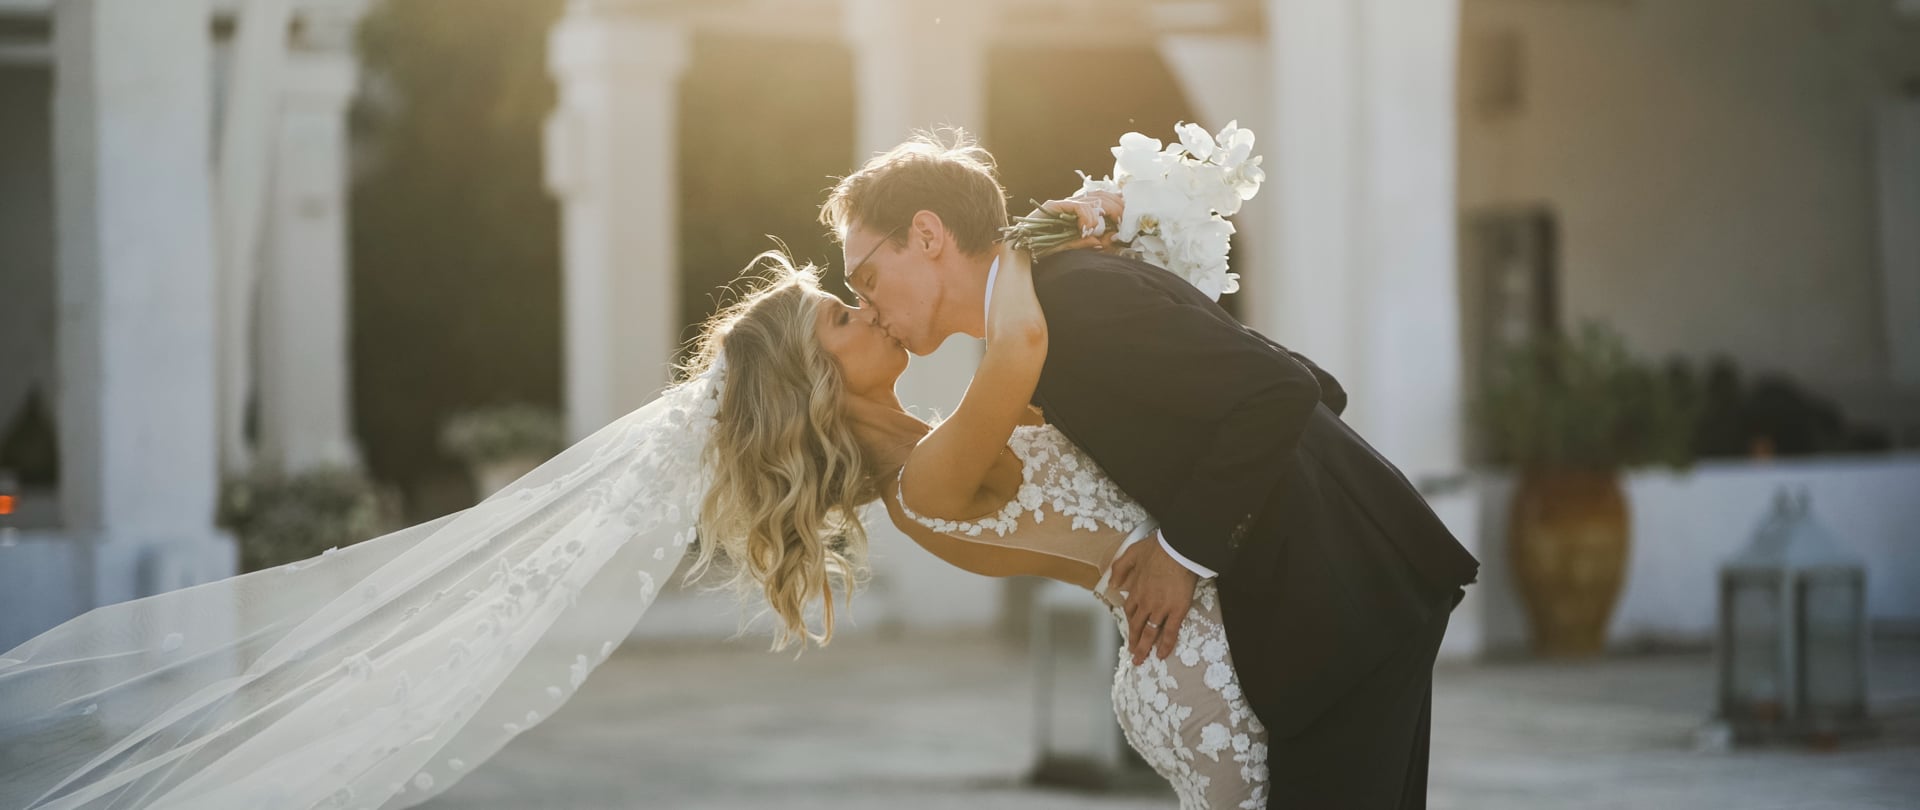 Tori & Ben Wedding Video Filmed at Puglia, Italy